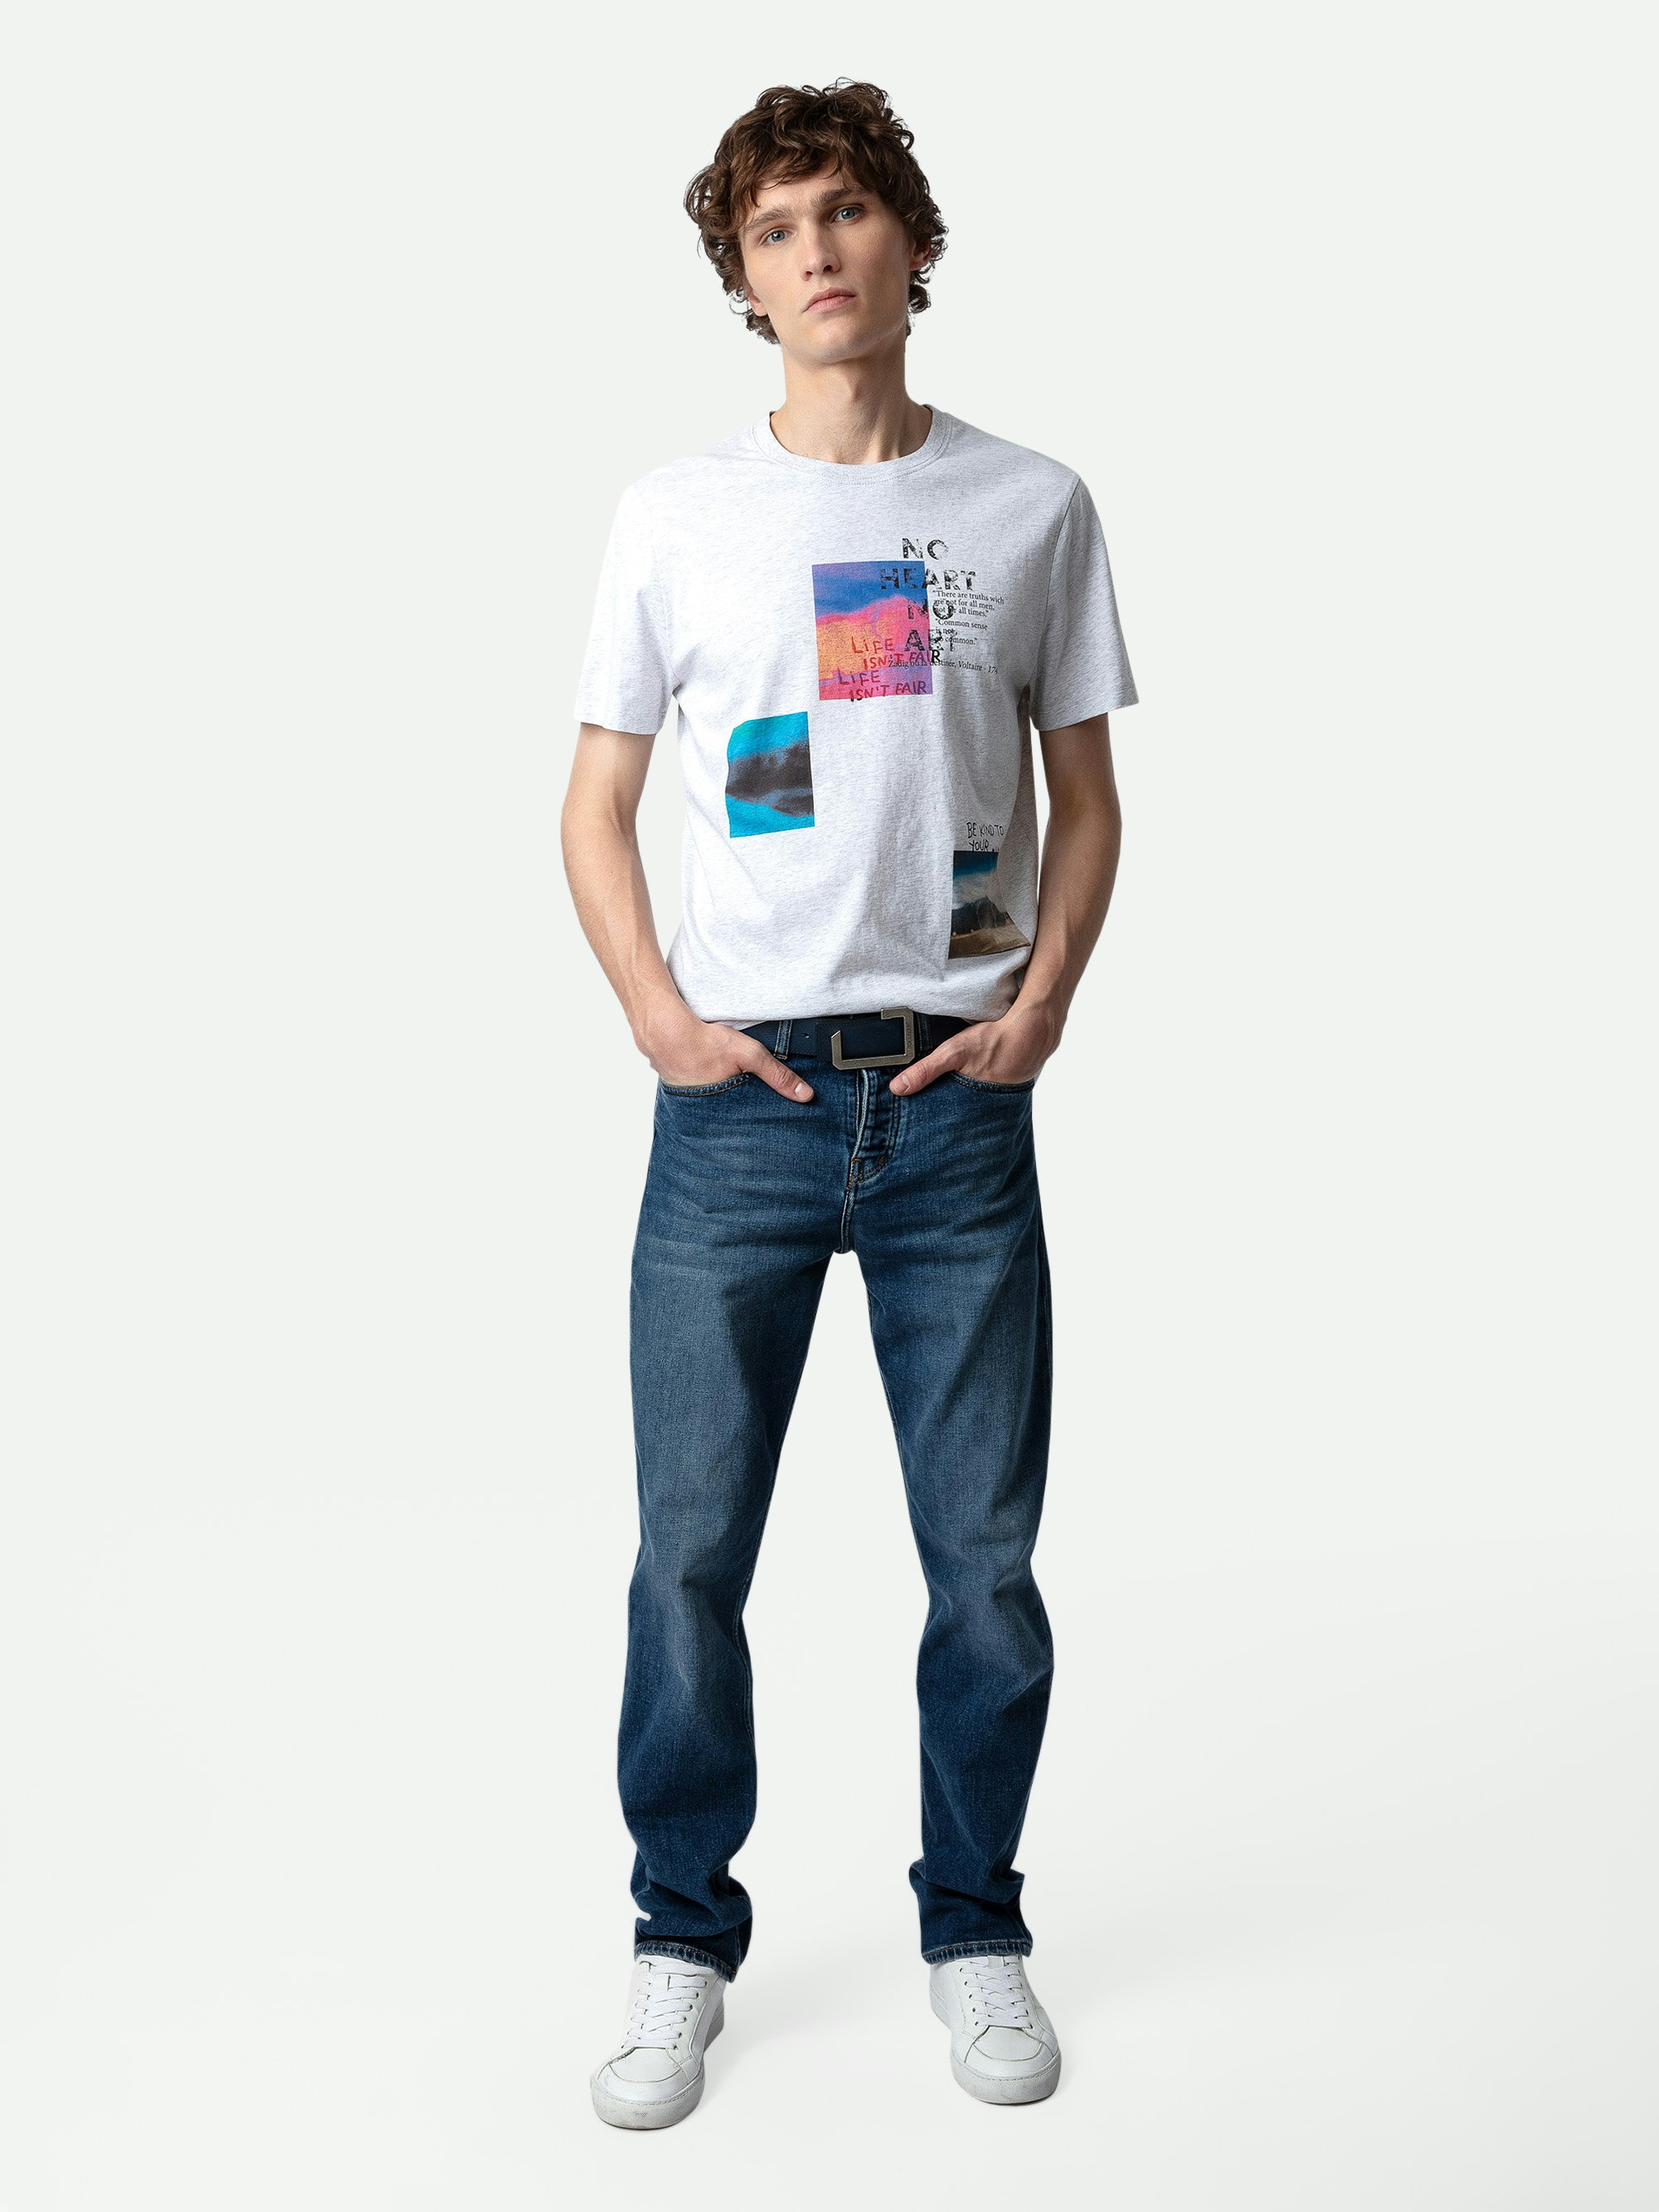 T-shirt Ted Photoprint - T-shirt en coton gris chiné clair à col rond orné d'un imprimé photoprint Multiposter.